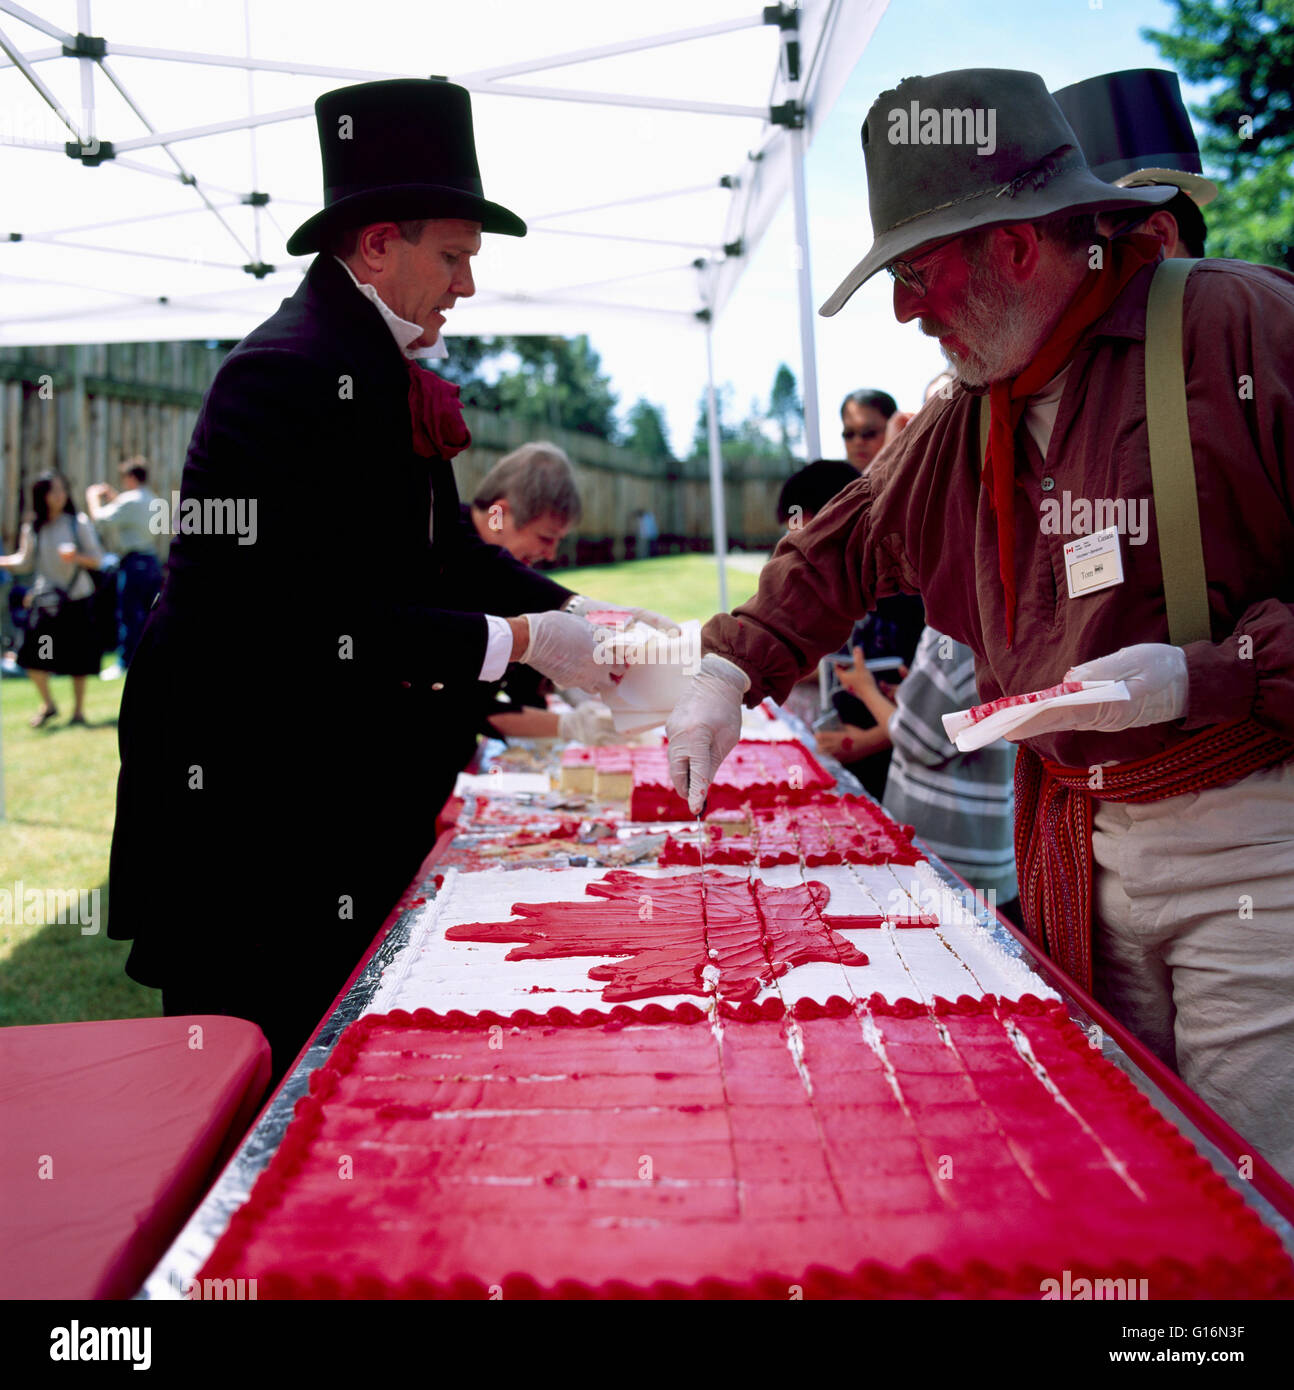 La célébration de la fête du Canada à Fort Langley, BC, en Colombie-Britannique, Canada - coupe reconstitueurs grand gâteau décoré comme un drapeau canadien Banque D'Images